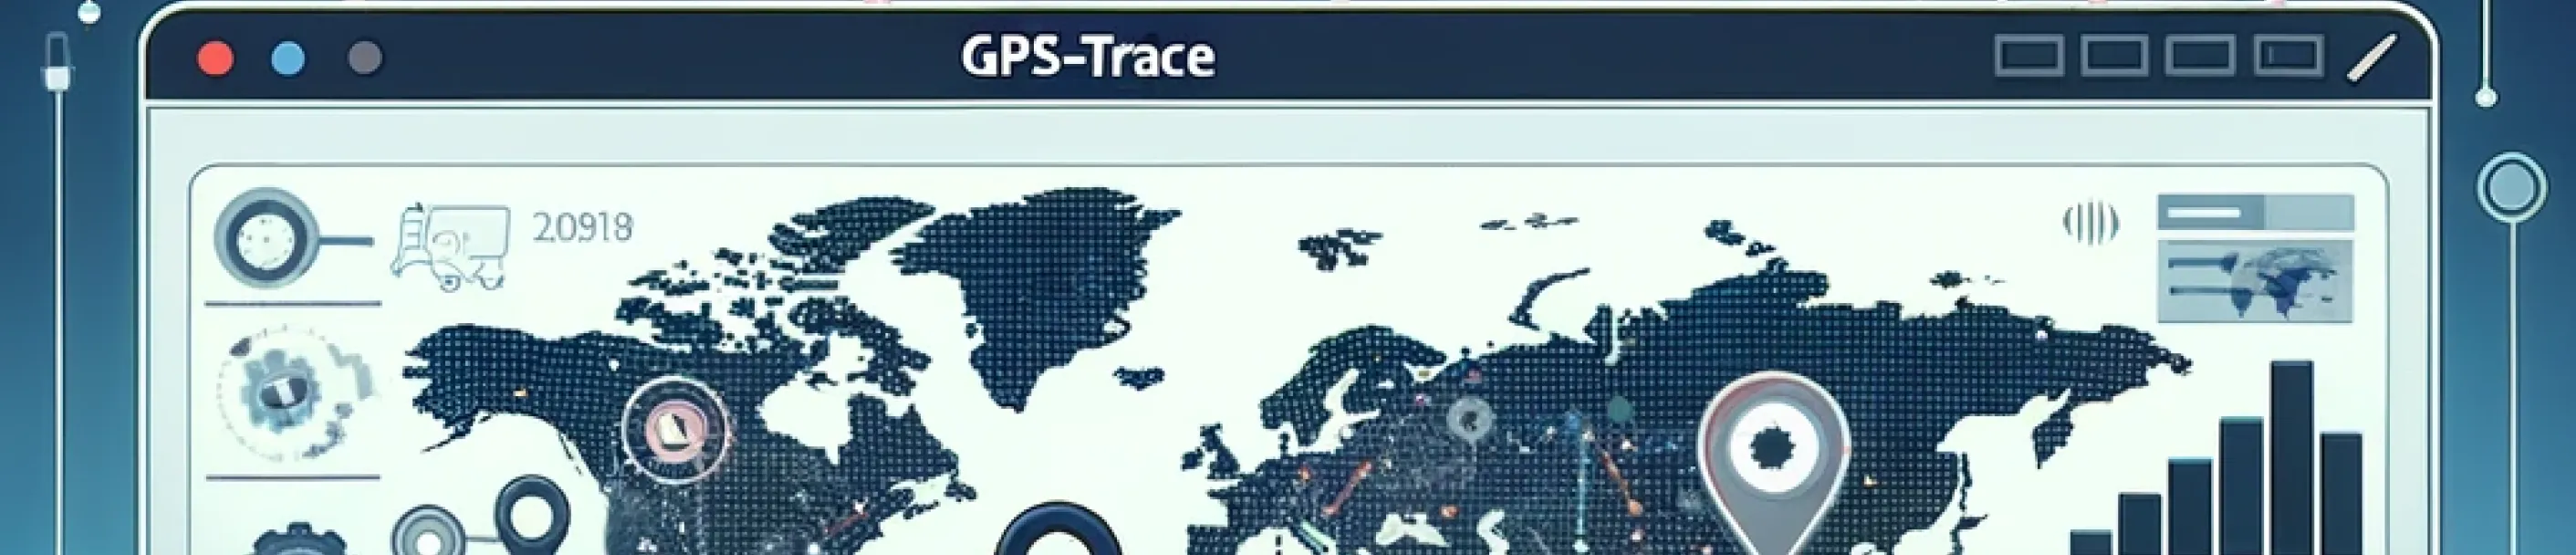 Jaringan mitra GPS-Trace